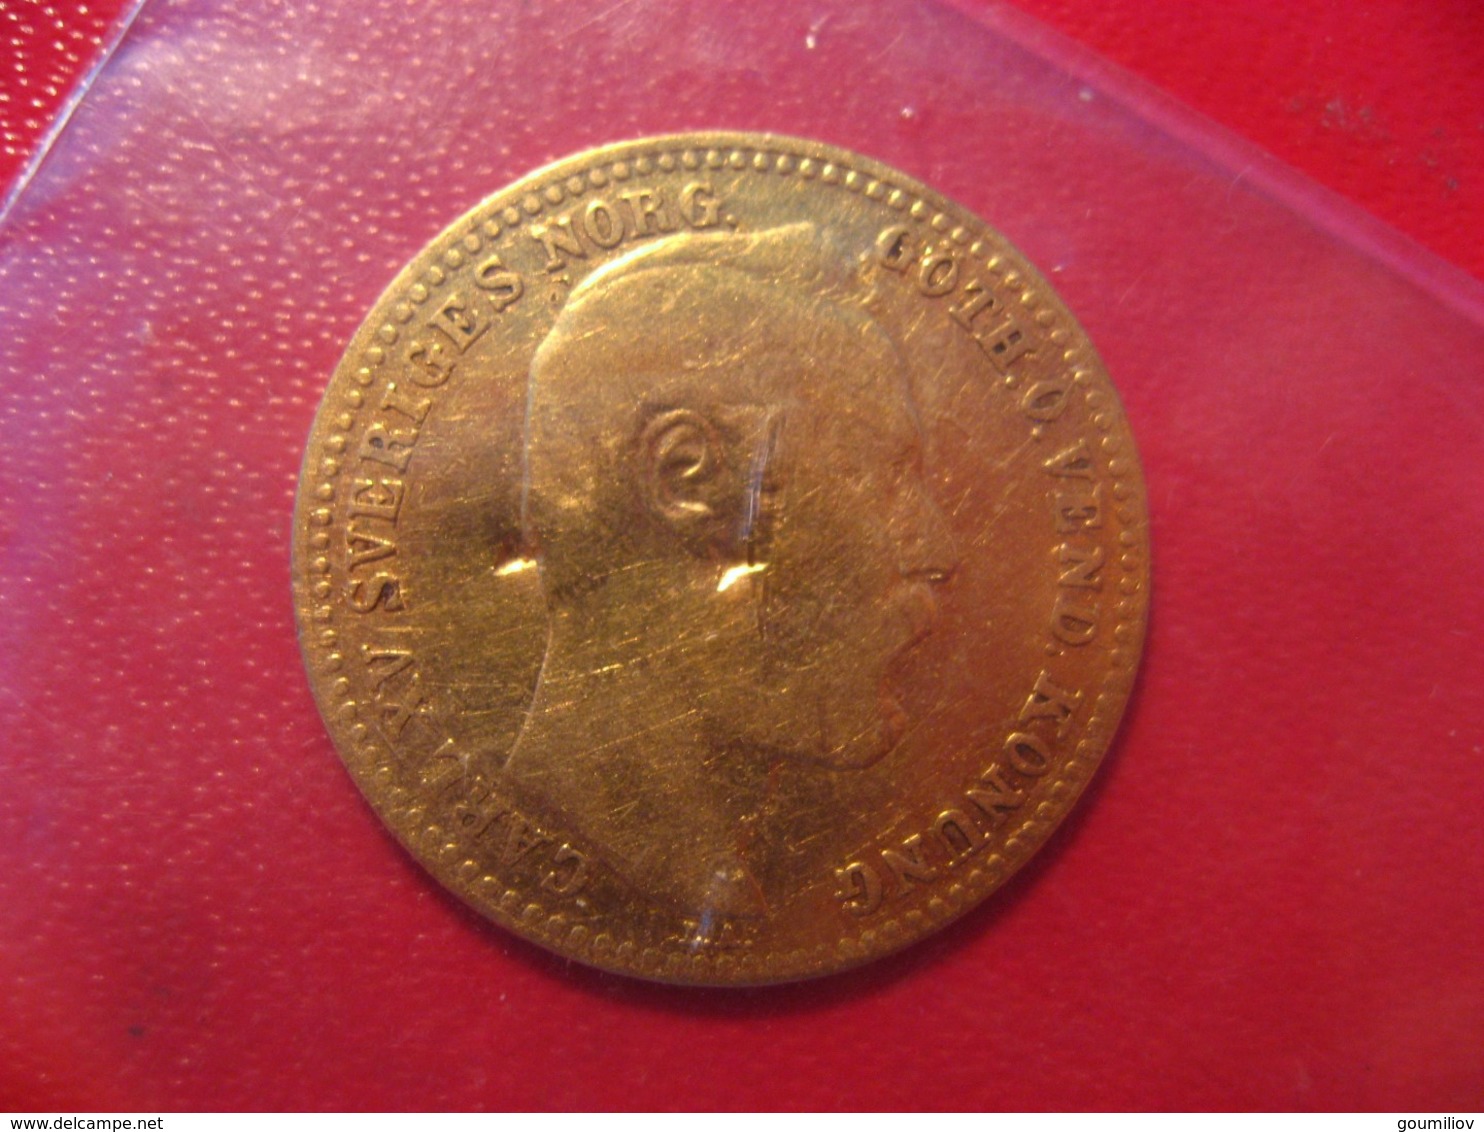 France/Suéde - Carolin 1869 - 10 Francs - Monnaie Commemorative Pour La Venue De Carl XV En France - 10 Francs (oro)